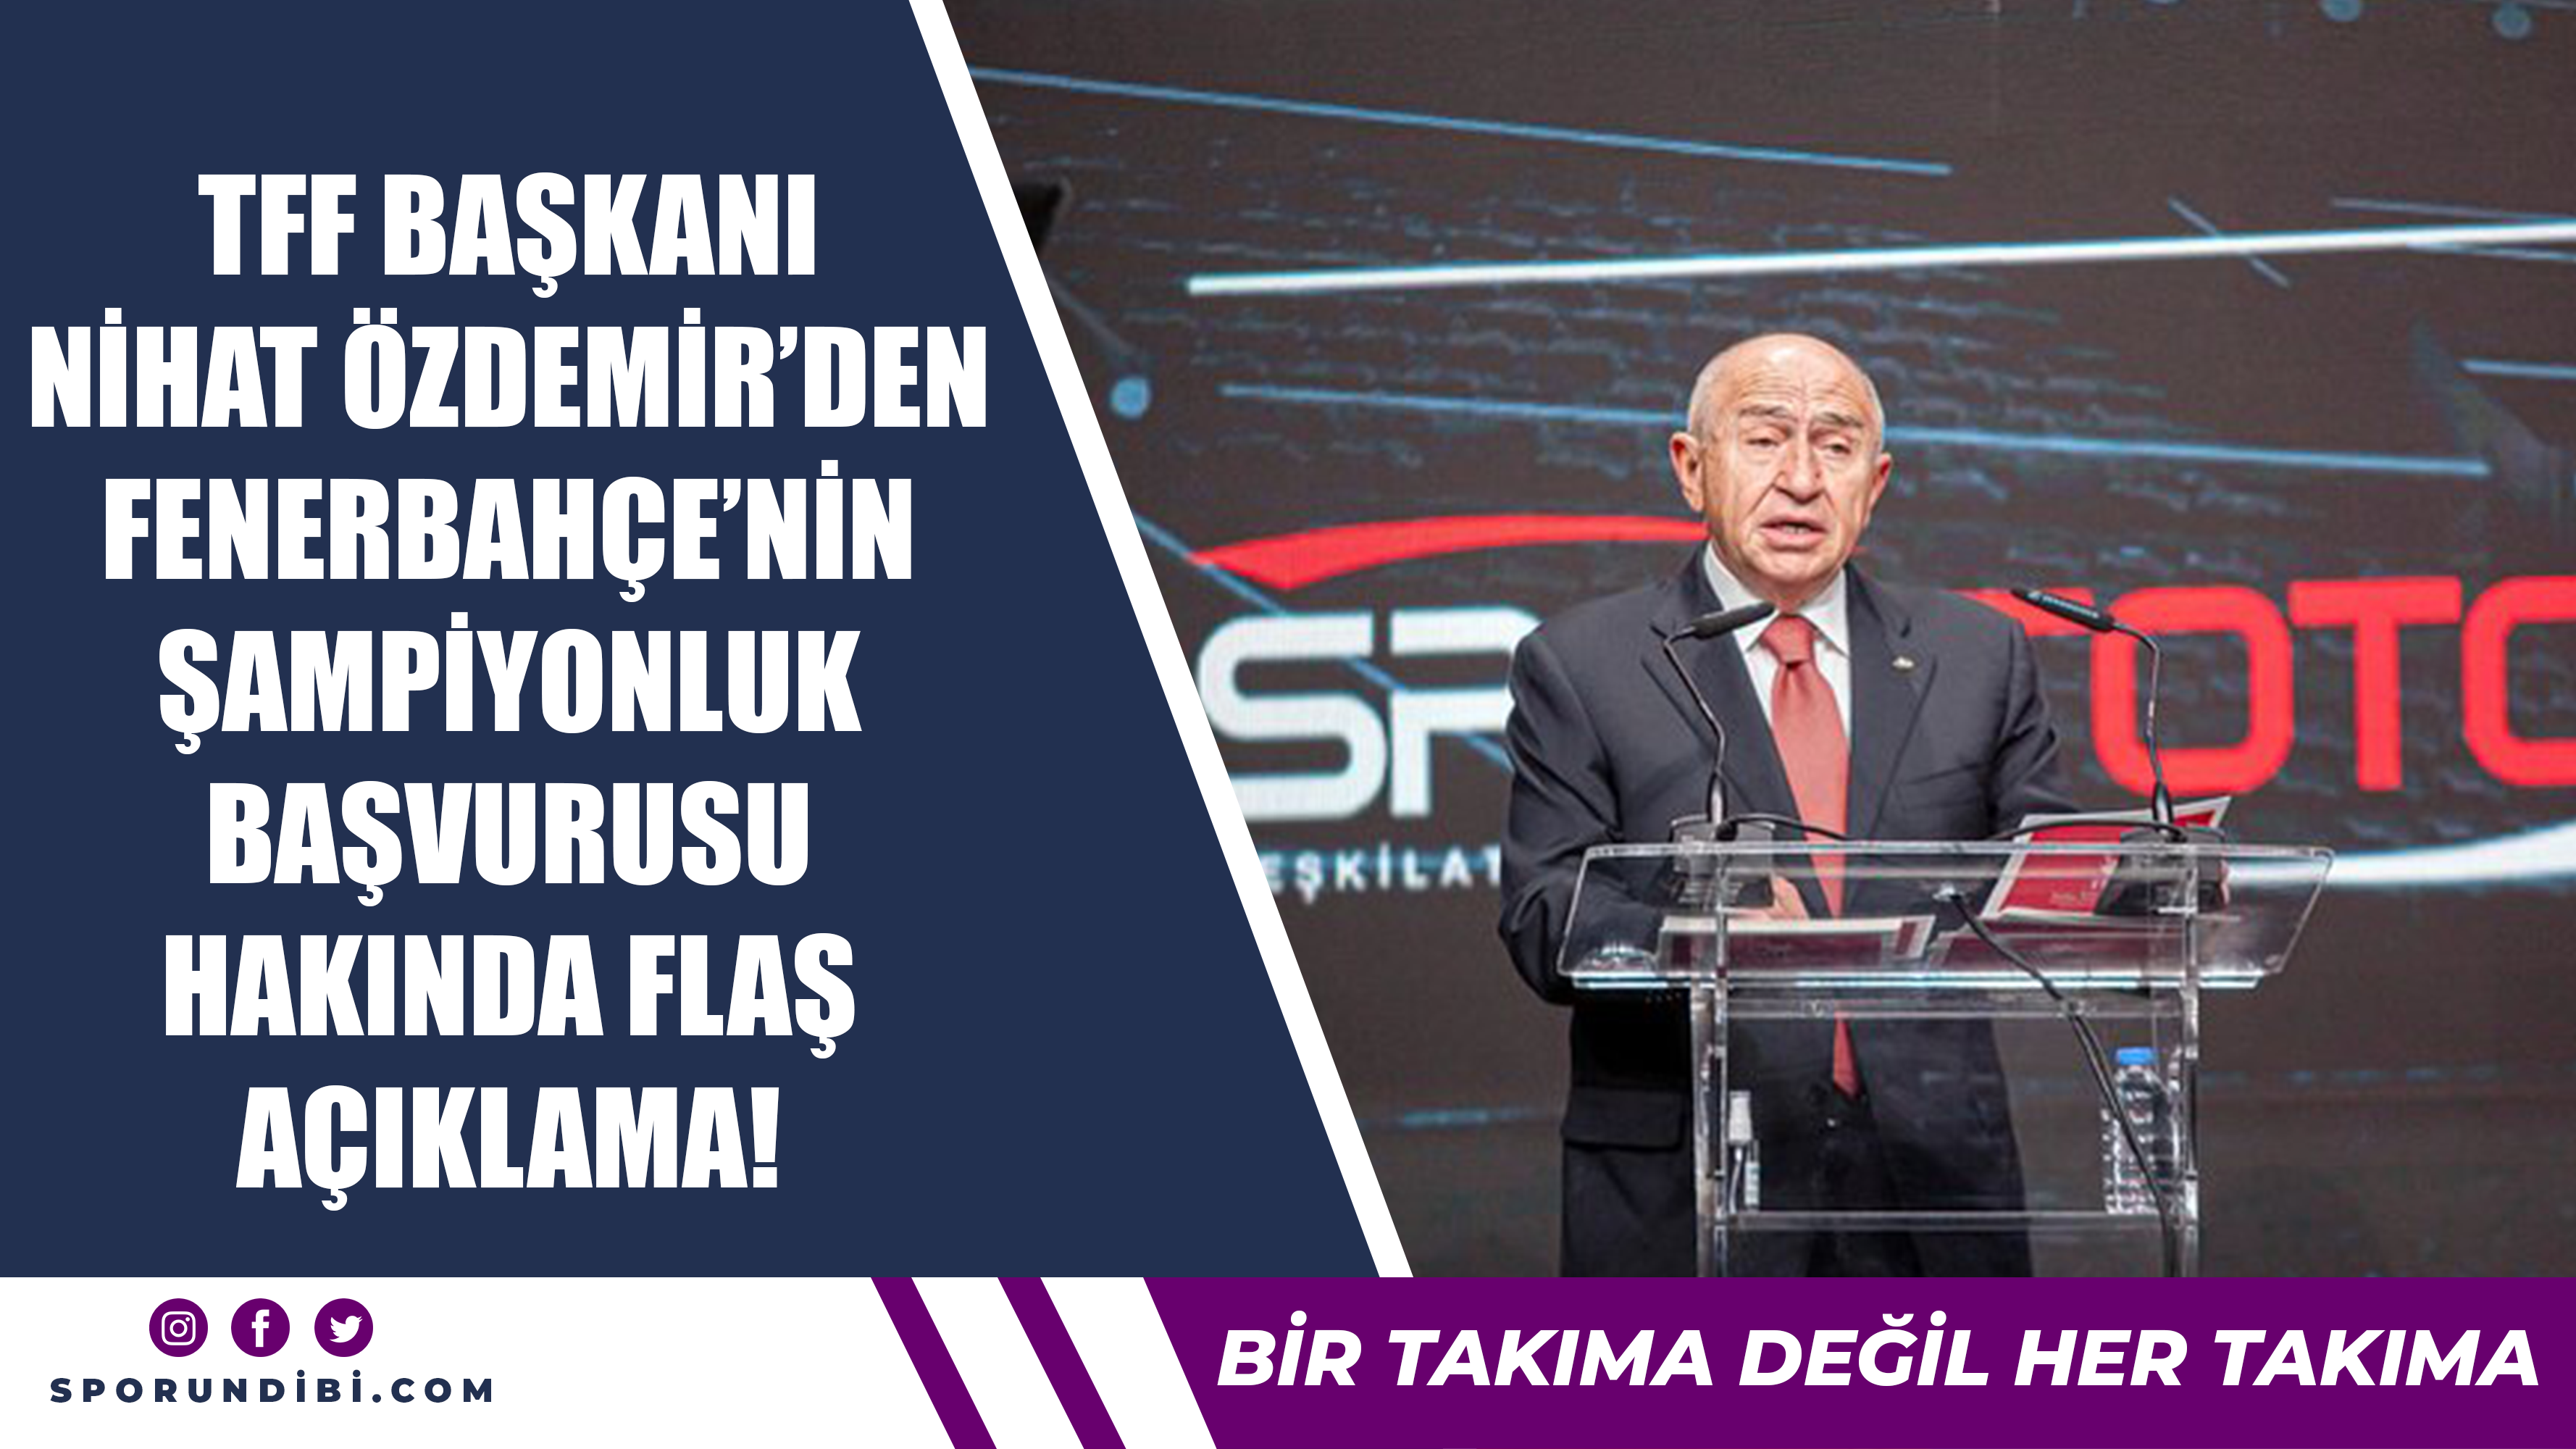 TFF Başkanı Nihat Özdemir'den Fenerbahçe'nin şampiyonluk başvurusu hakkında flaş açıklama!